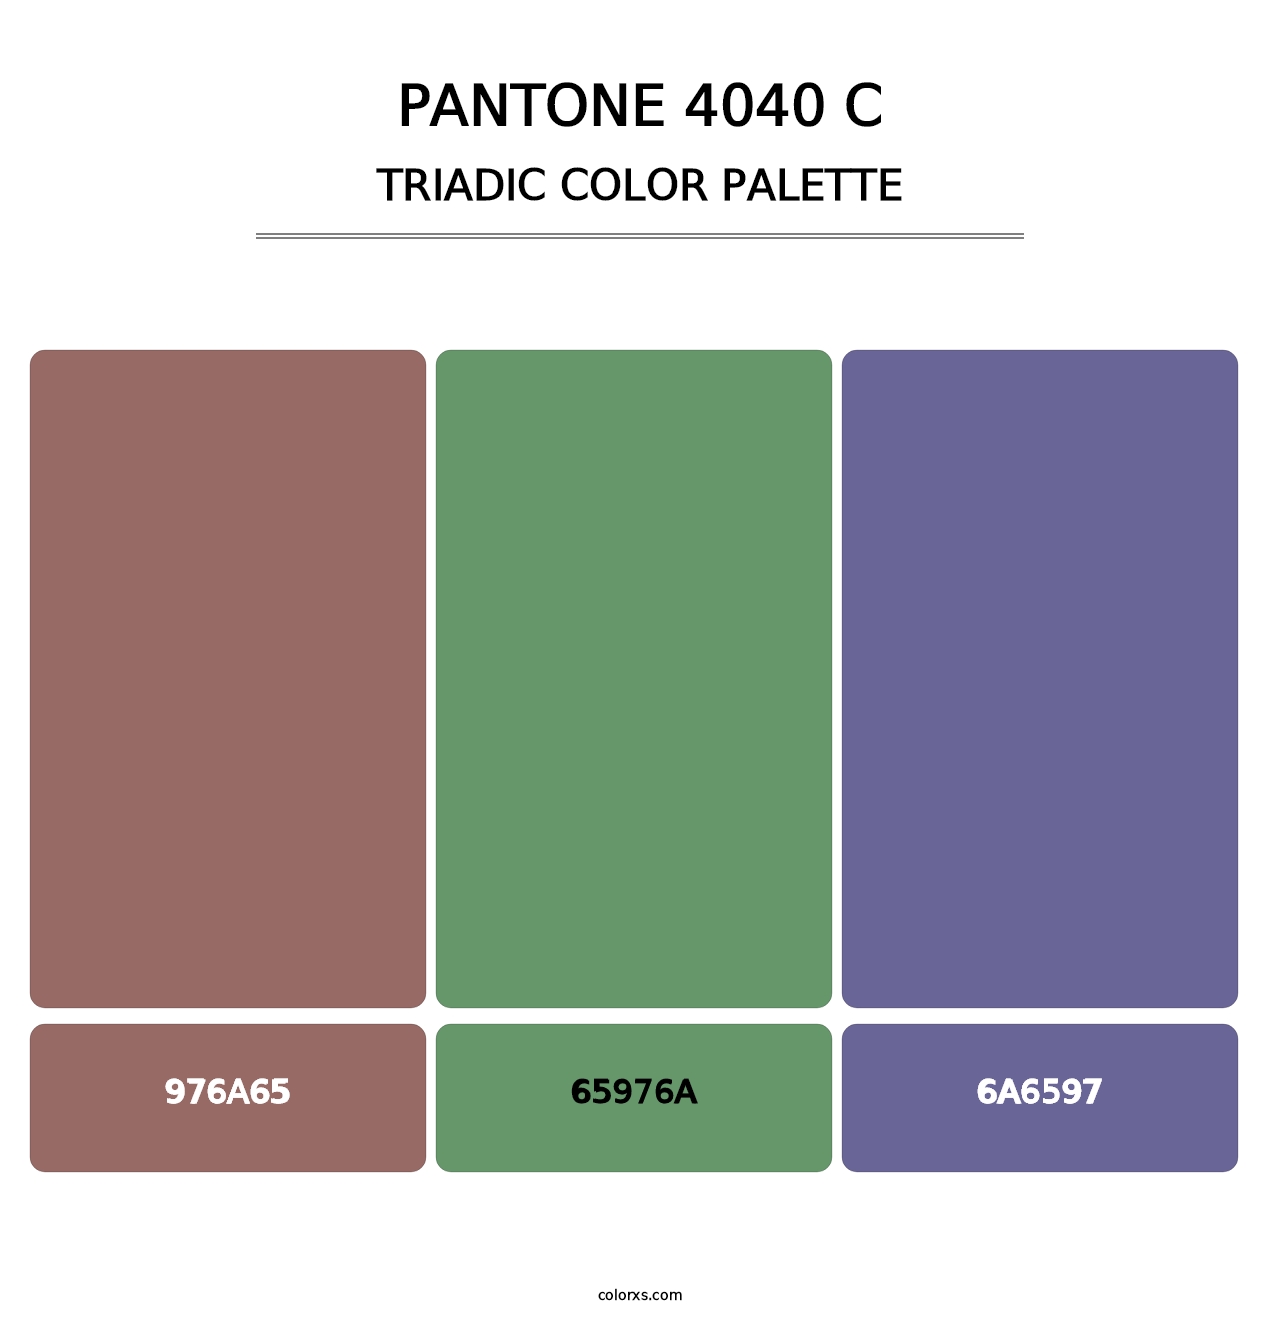 PANTONE 4040 C - Triadic Color Palette